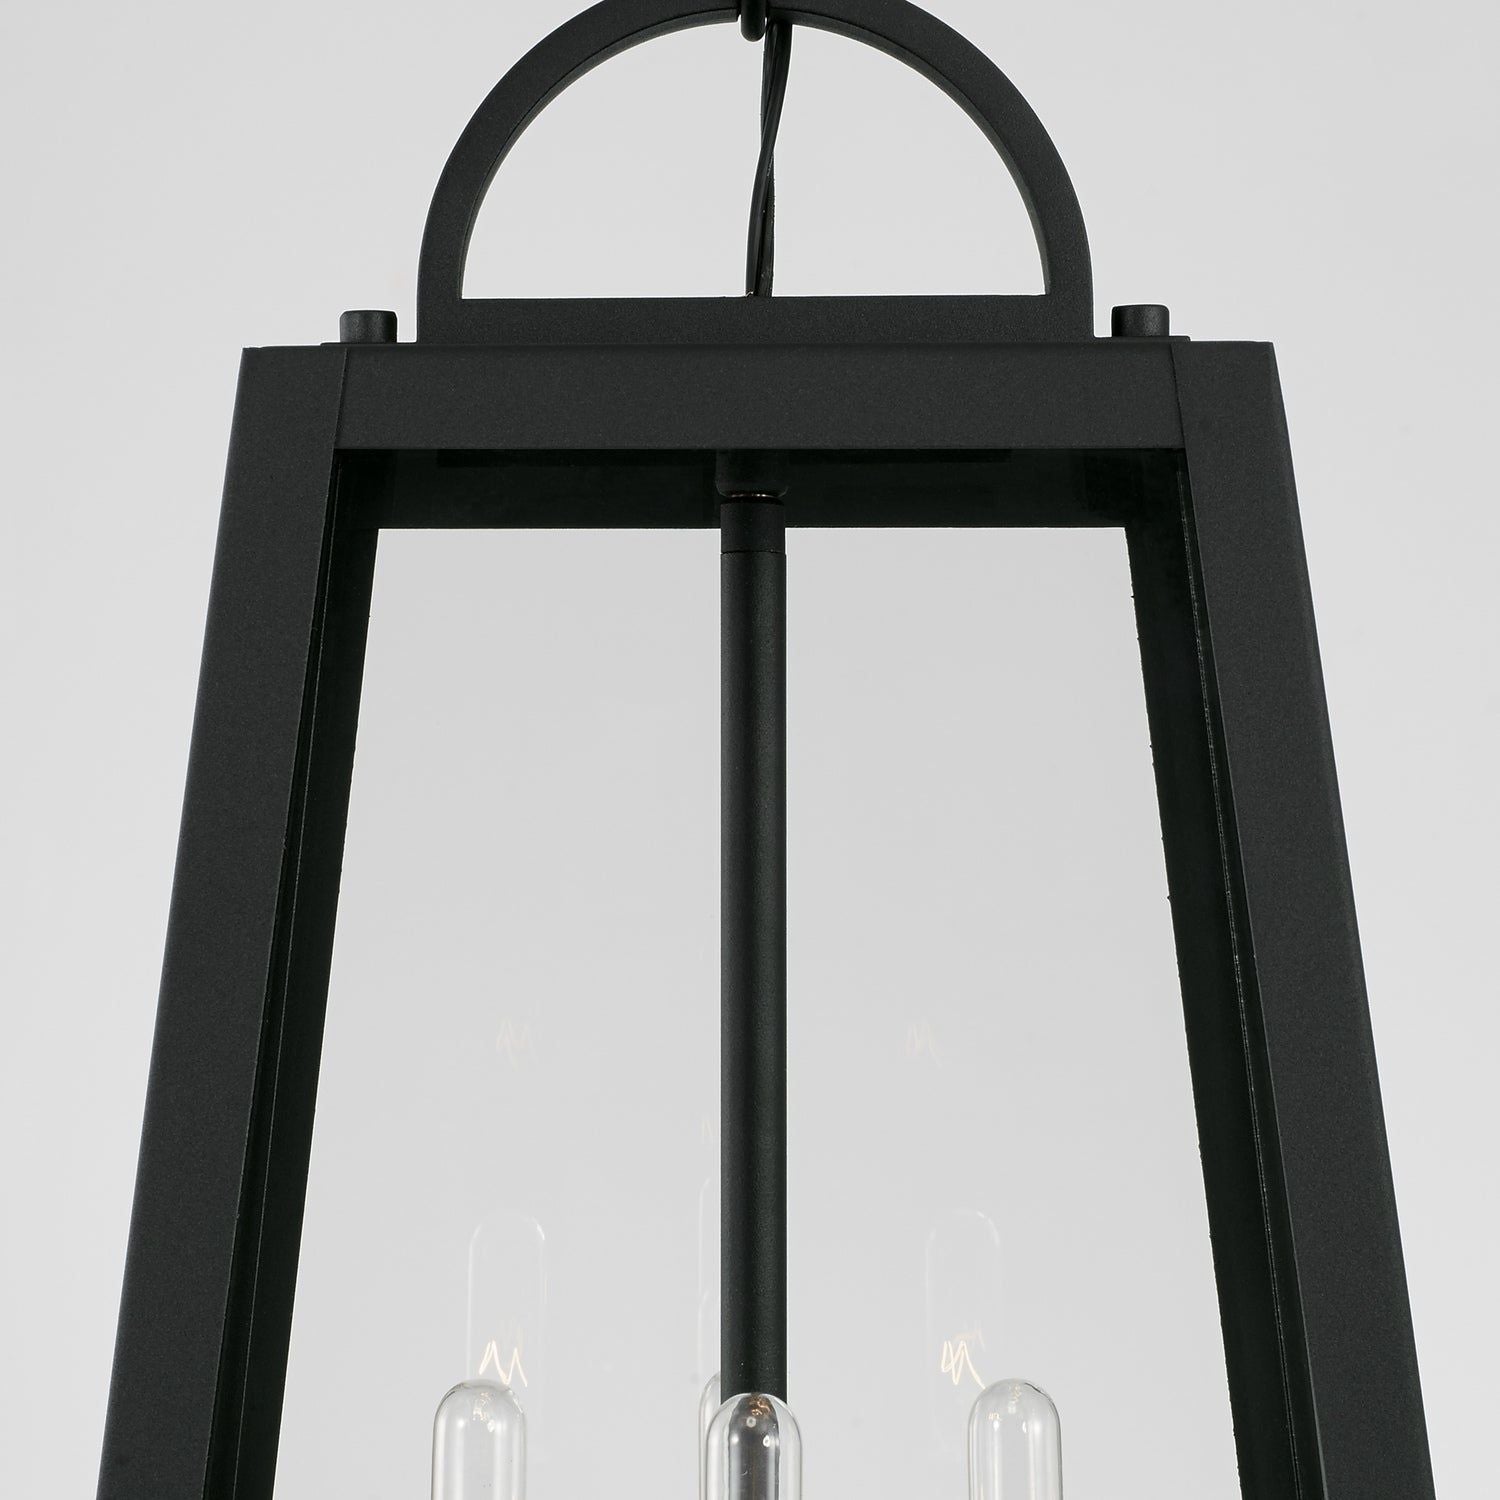 Leighton 4-Light Outdoor Hanging Lantern